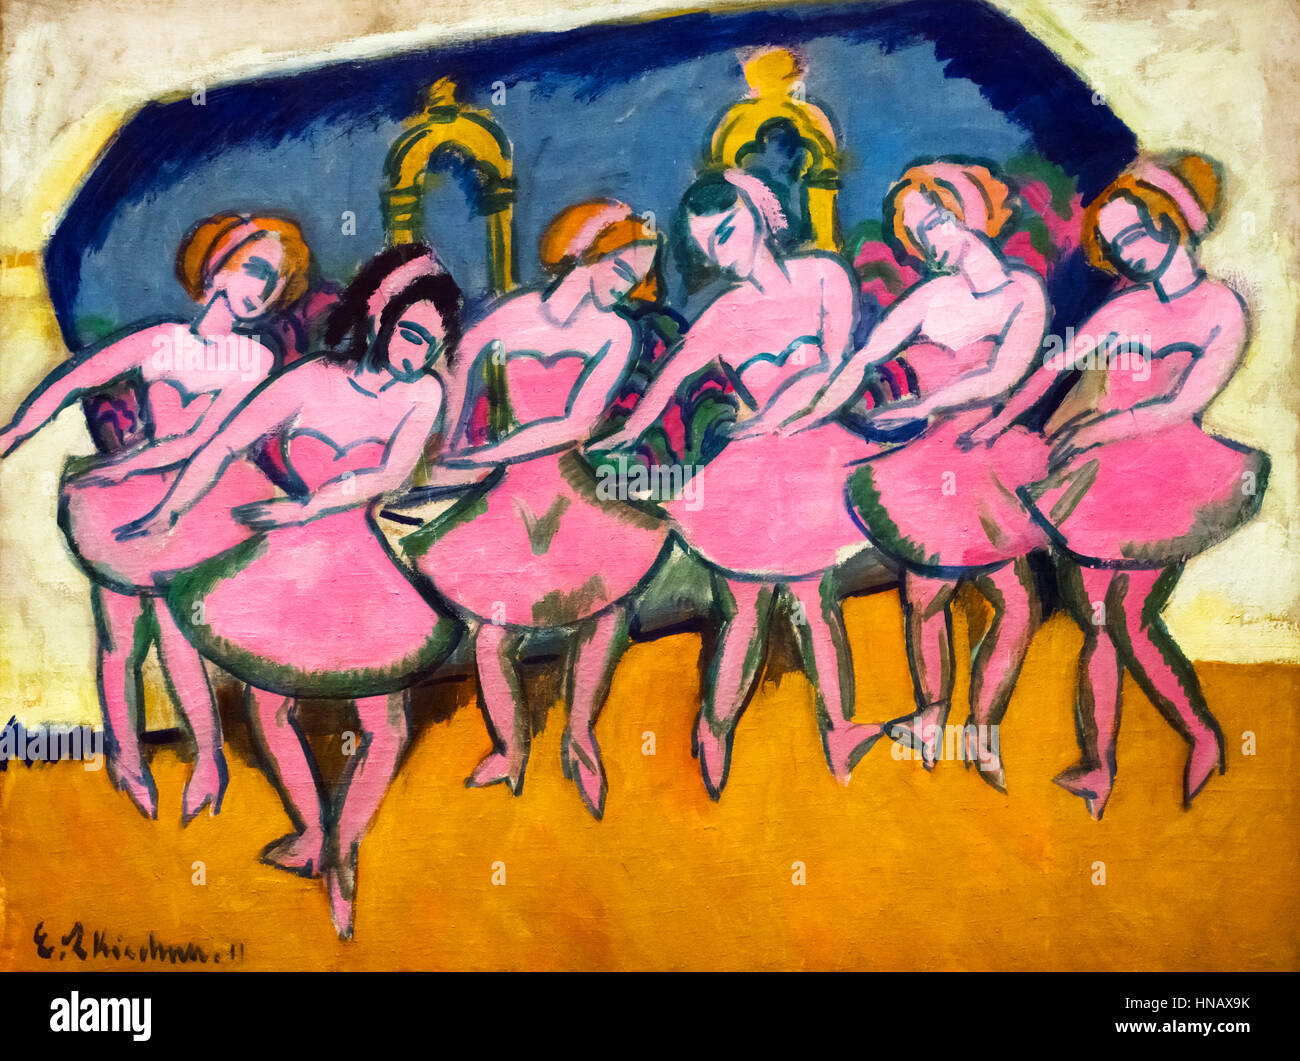 Kirchner, expressionistische Malerei. "Sechs Tänzer" von Kirchner (1880 – 1938), Öl auf Leinwand, 1911. Stockfoto